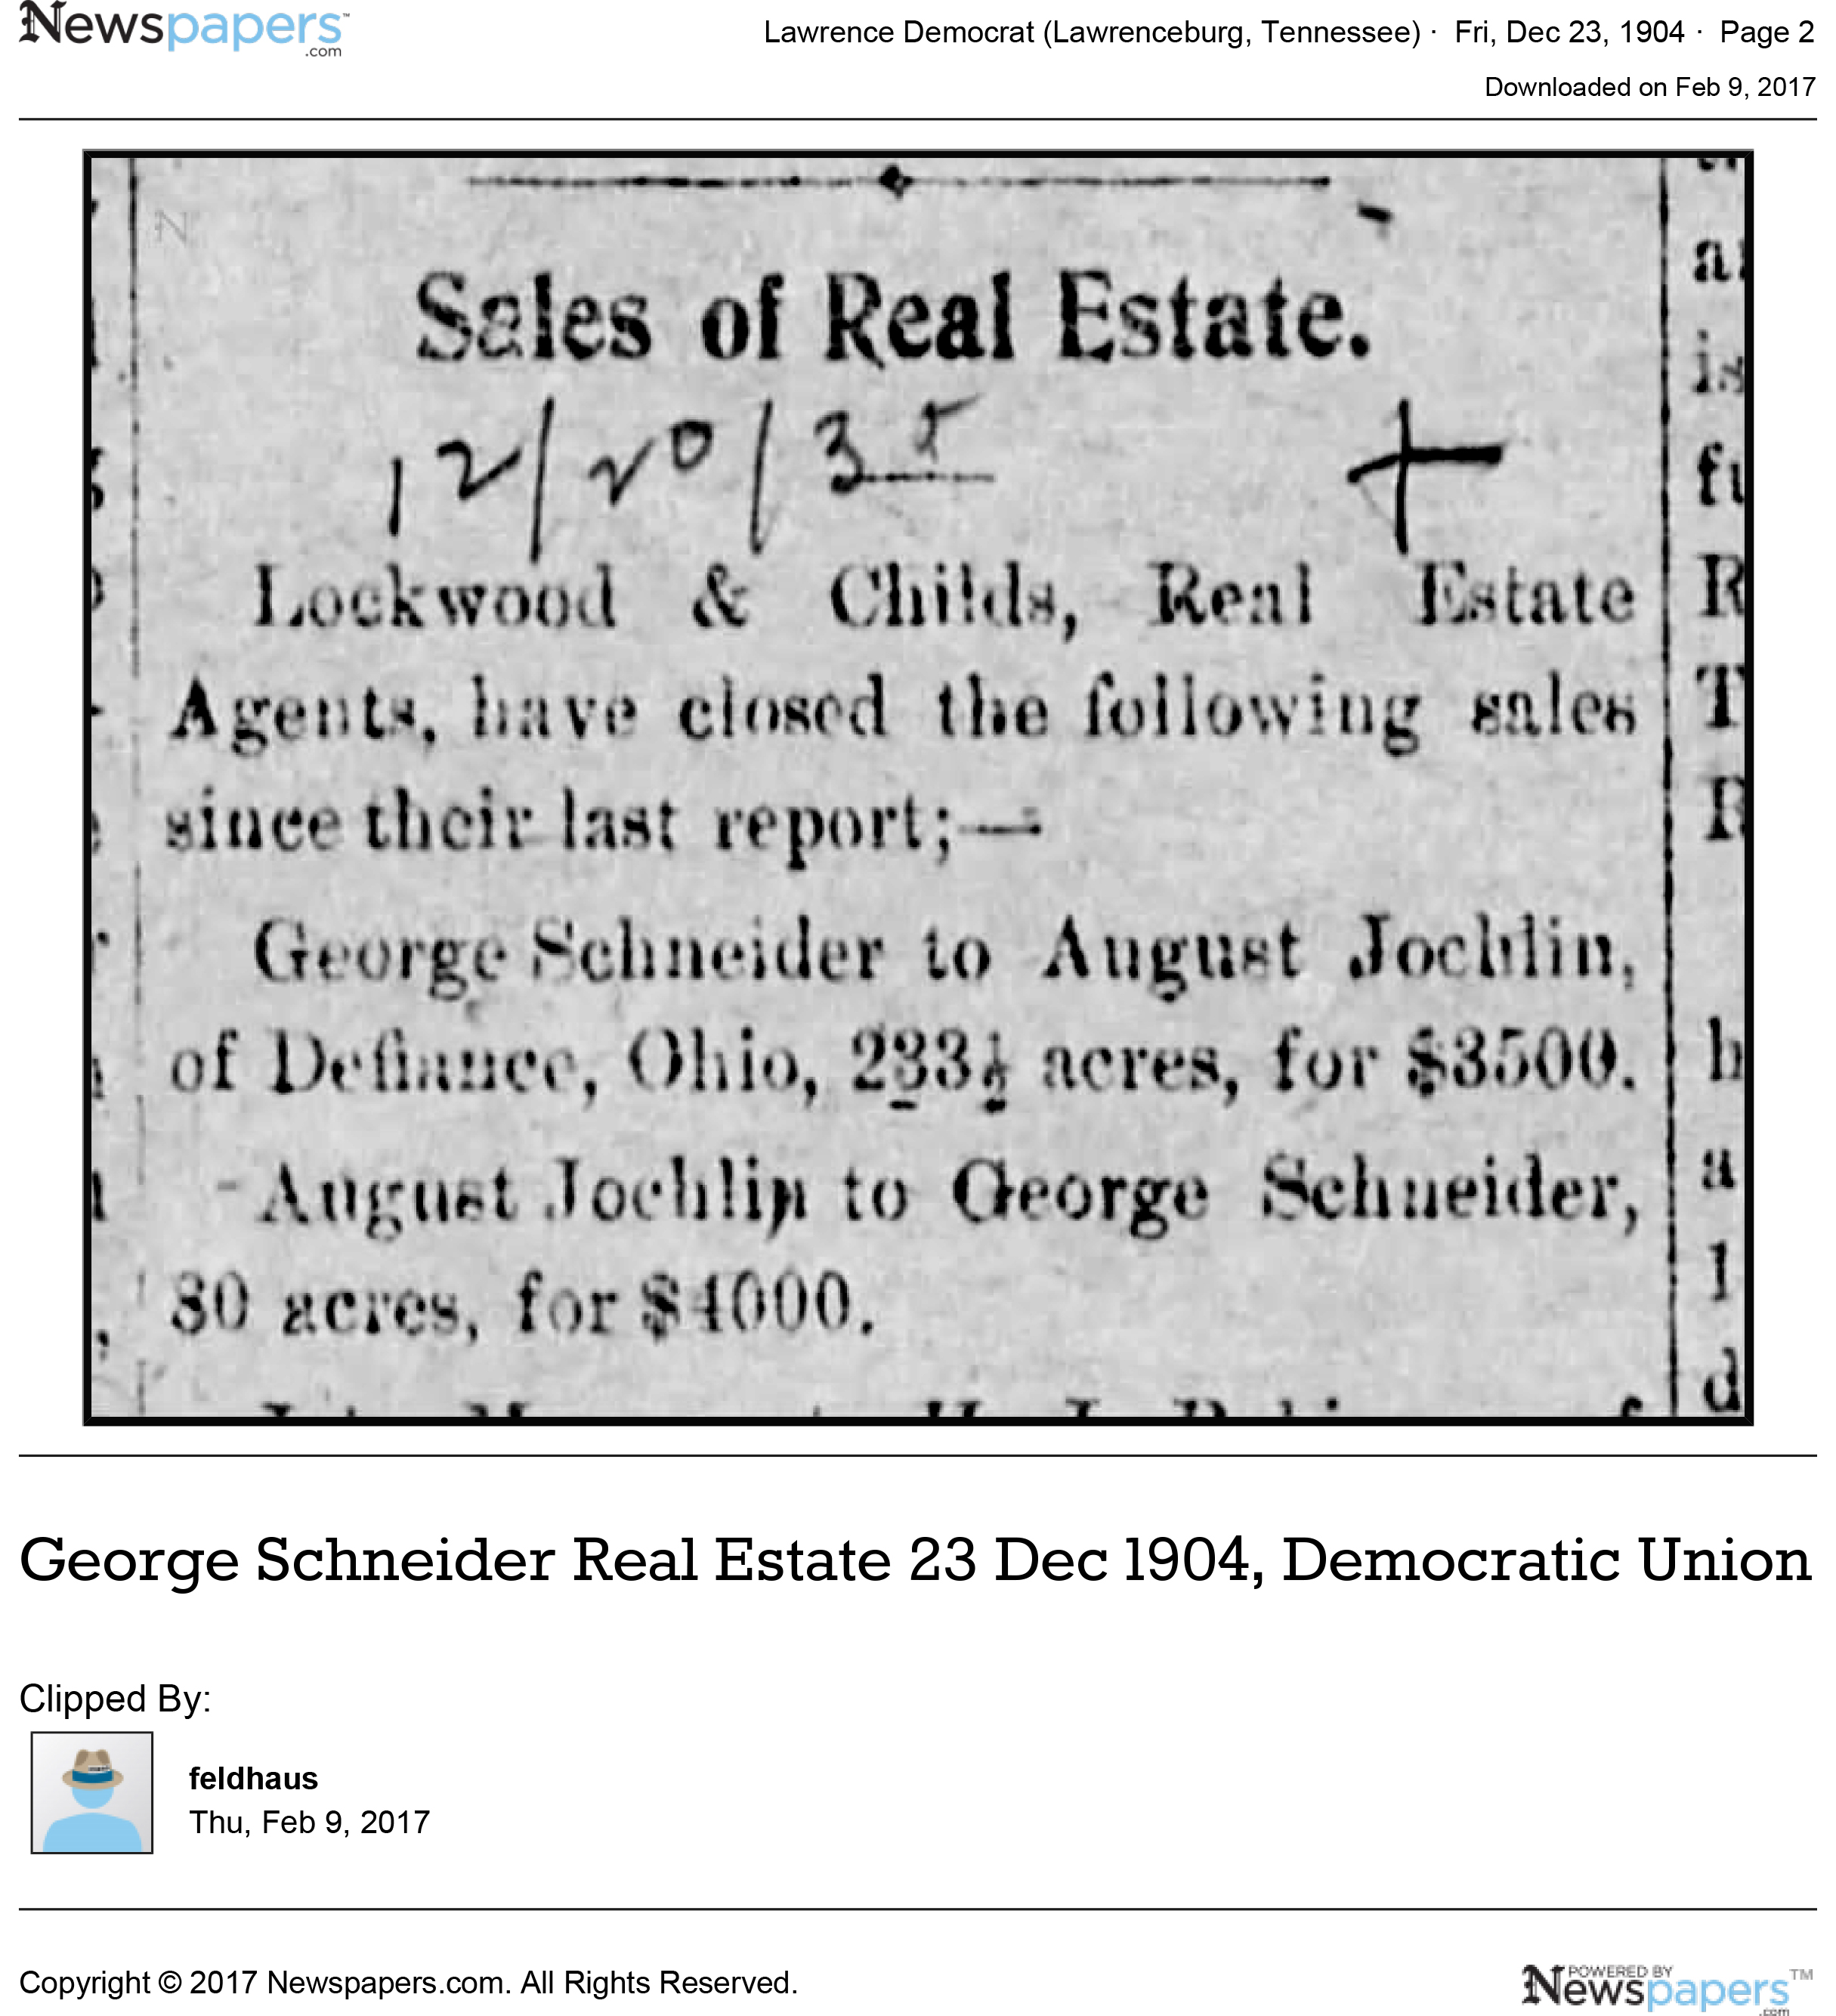 george_schneider_real_estate_23_dec_1904__democratic_union.jpg